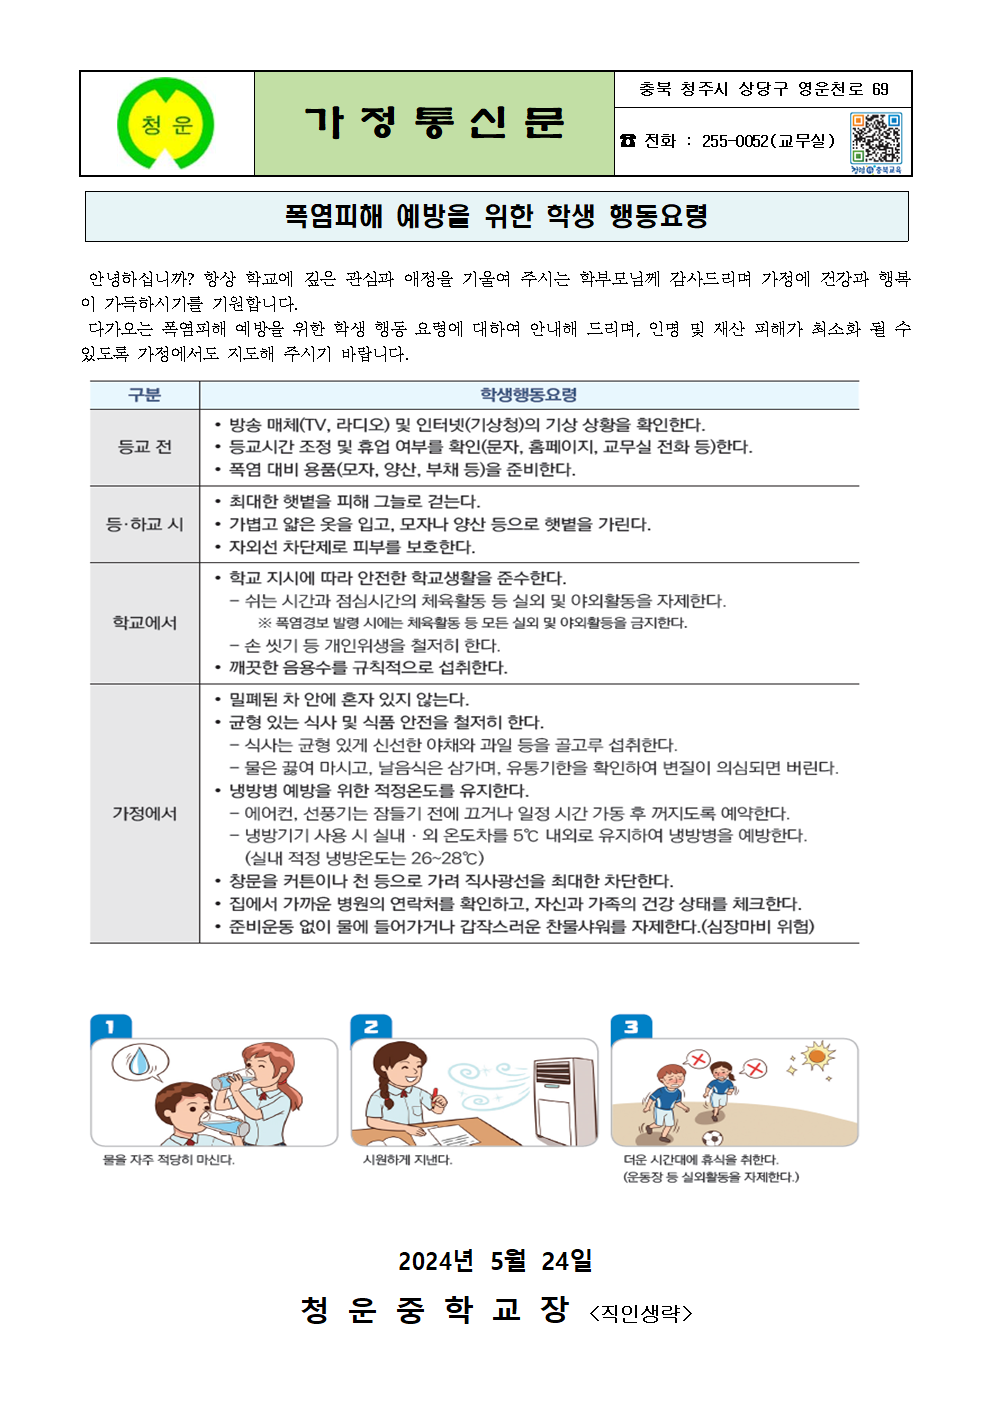 폭염피해 예방을 위한 행동요령 가정통신문001